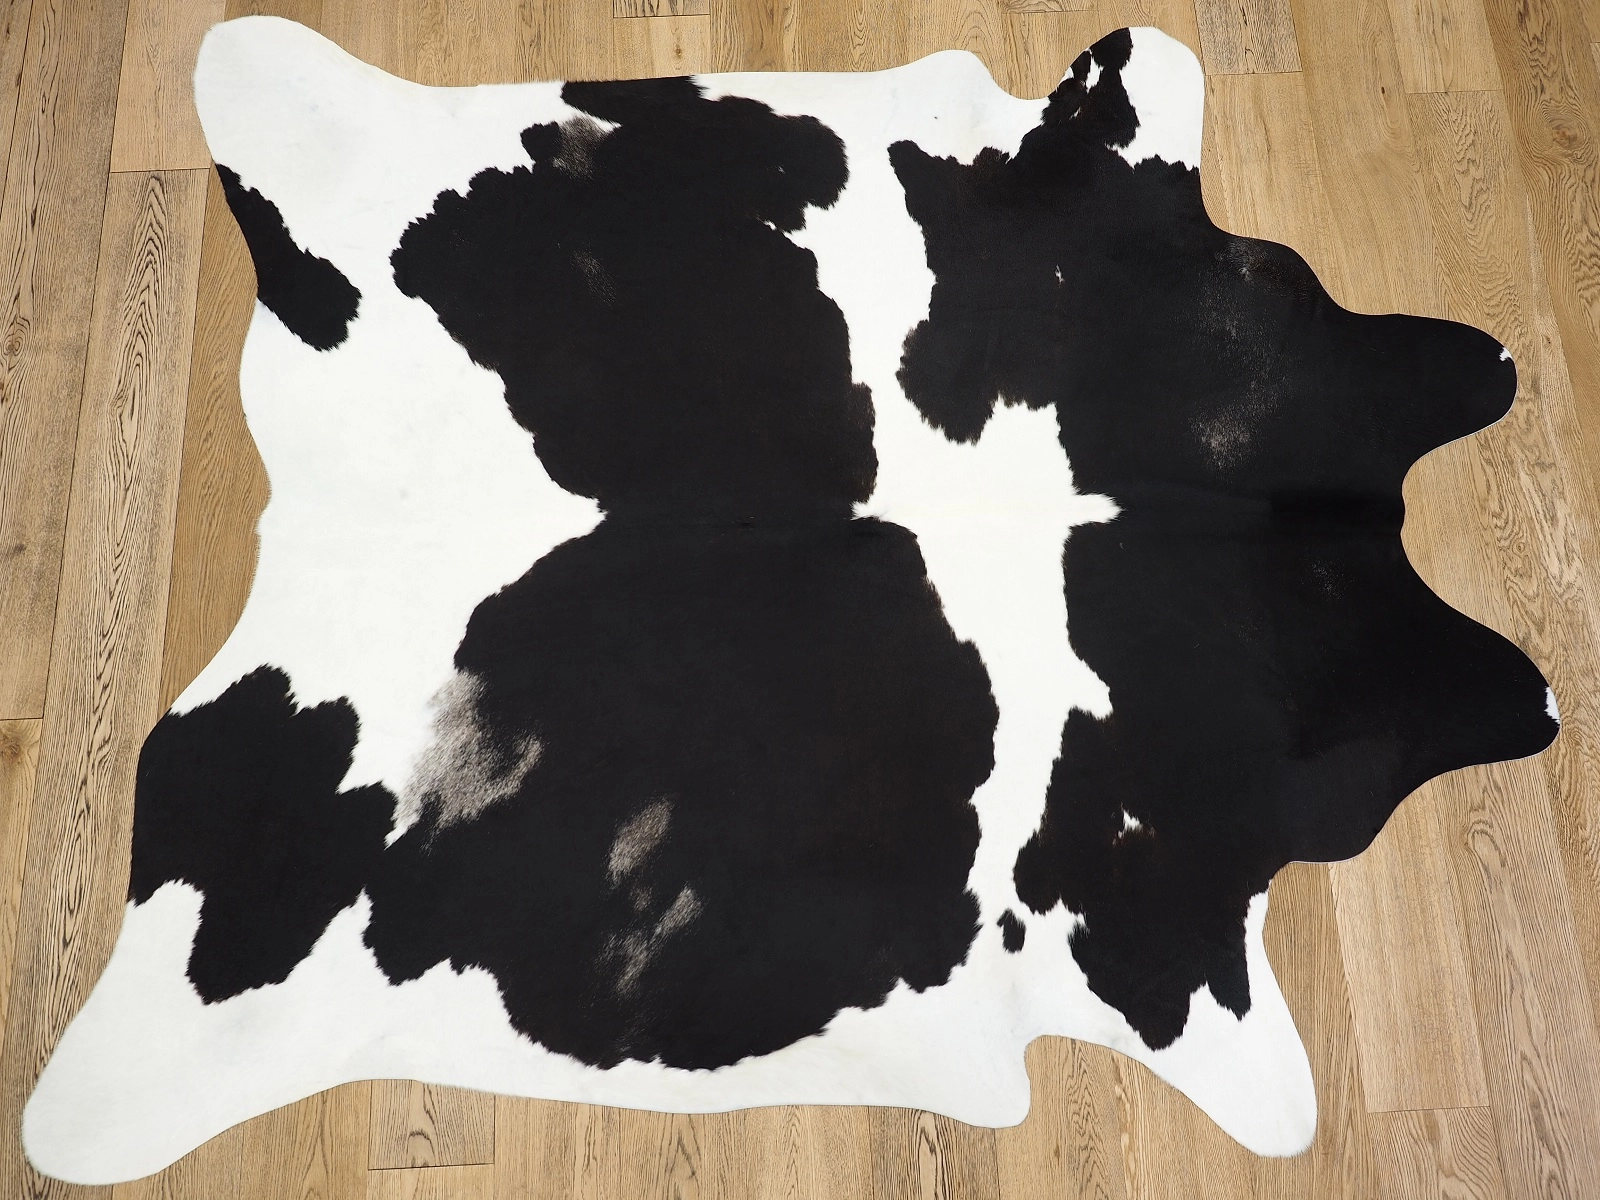 Натуральная коровья шкура черно-белая на пол 26390 — купить по выгодной цене в интернет-магазине Cowhide